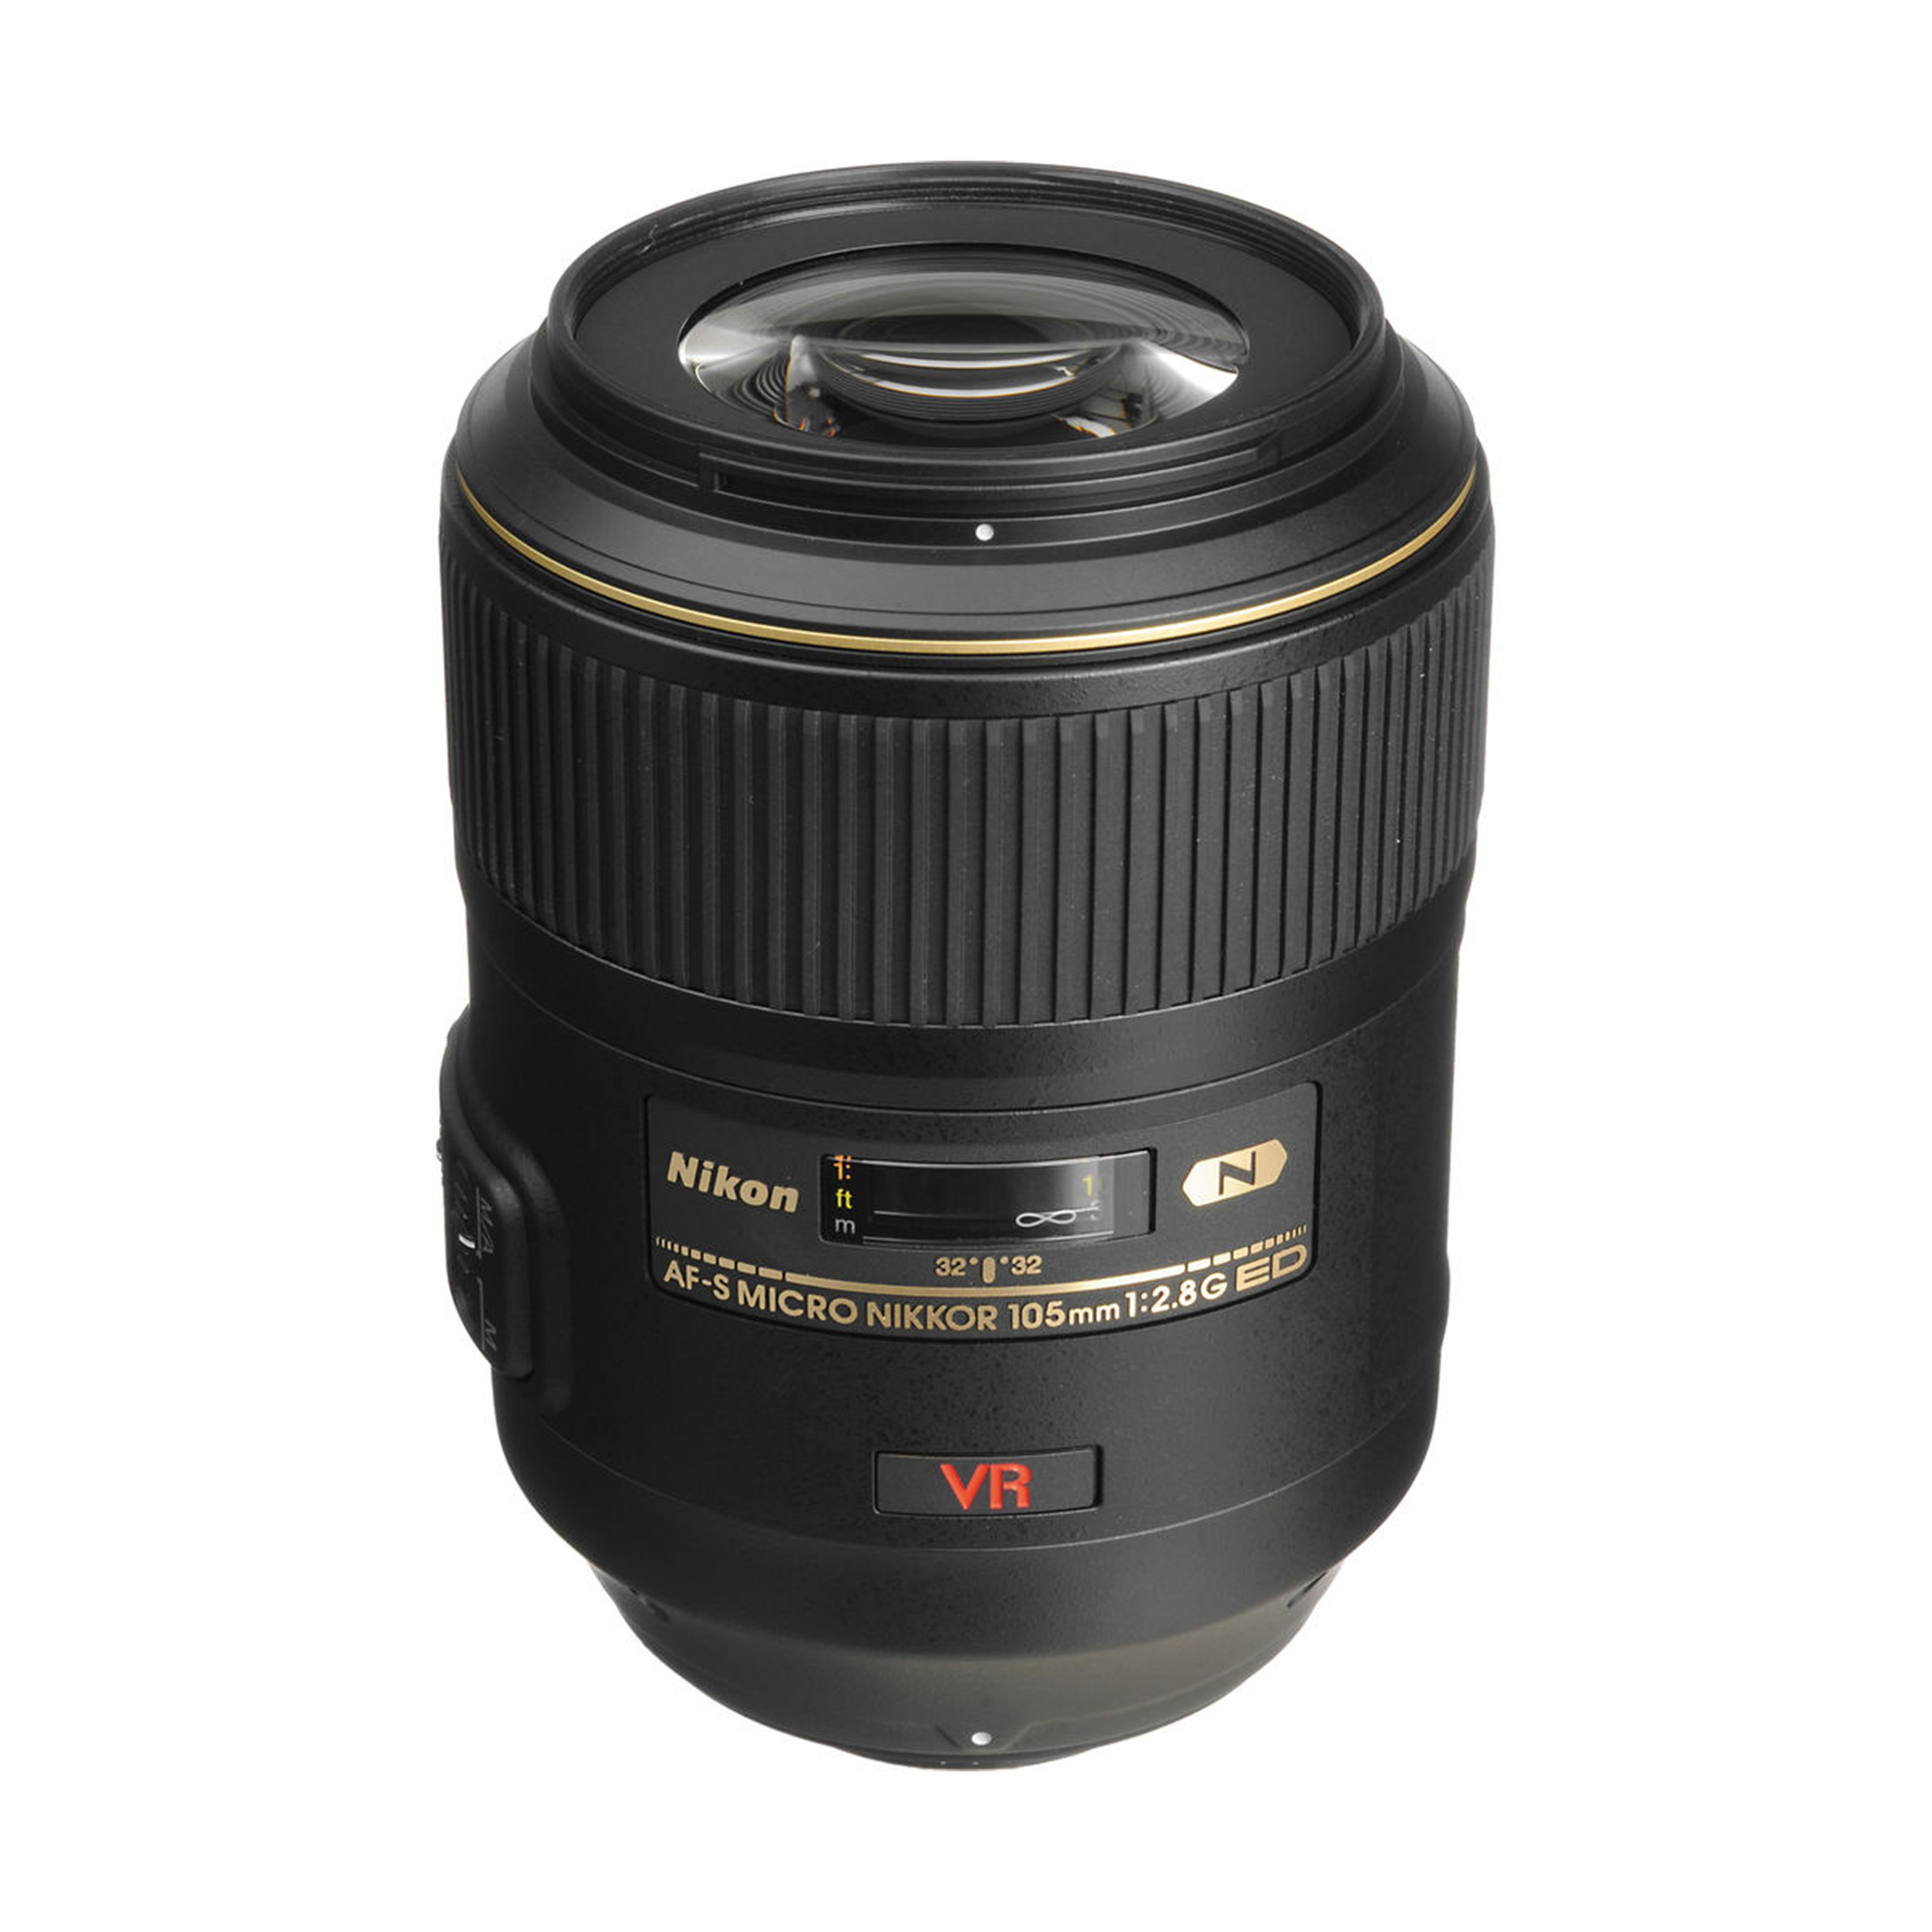 Nikon AF-S VR Micro NIKKOR 105mm f/2.8G IF-ED Lens-Camera Lenses-futuromic